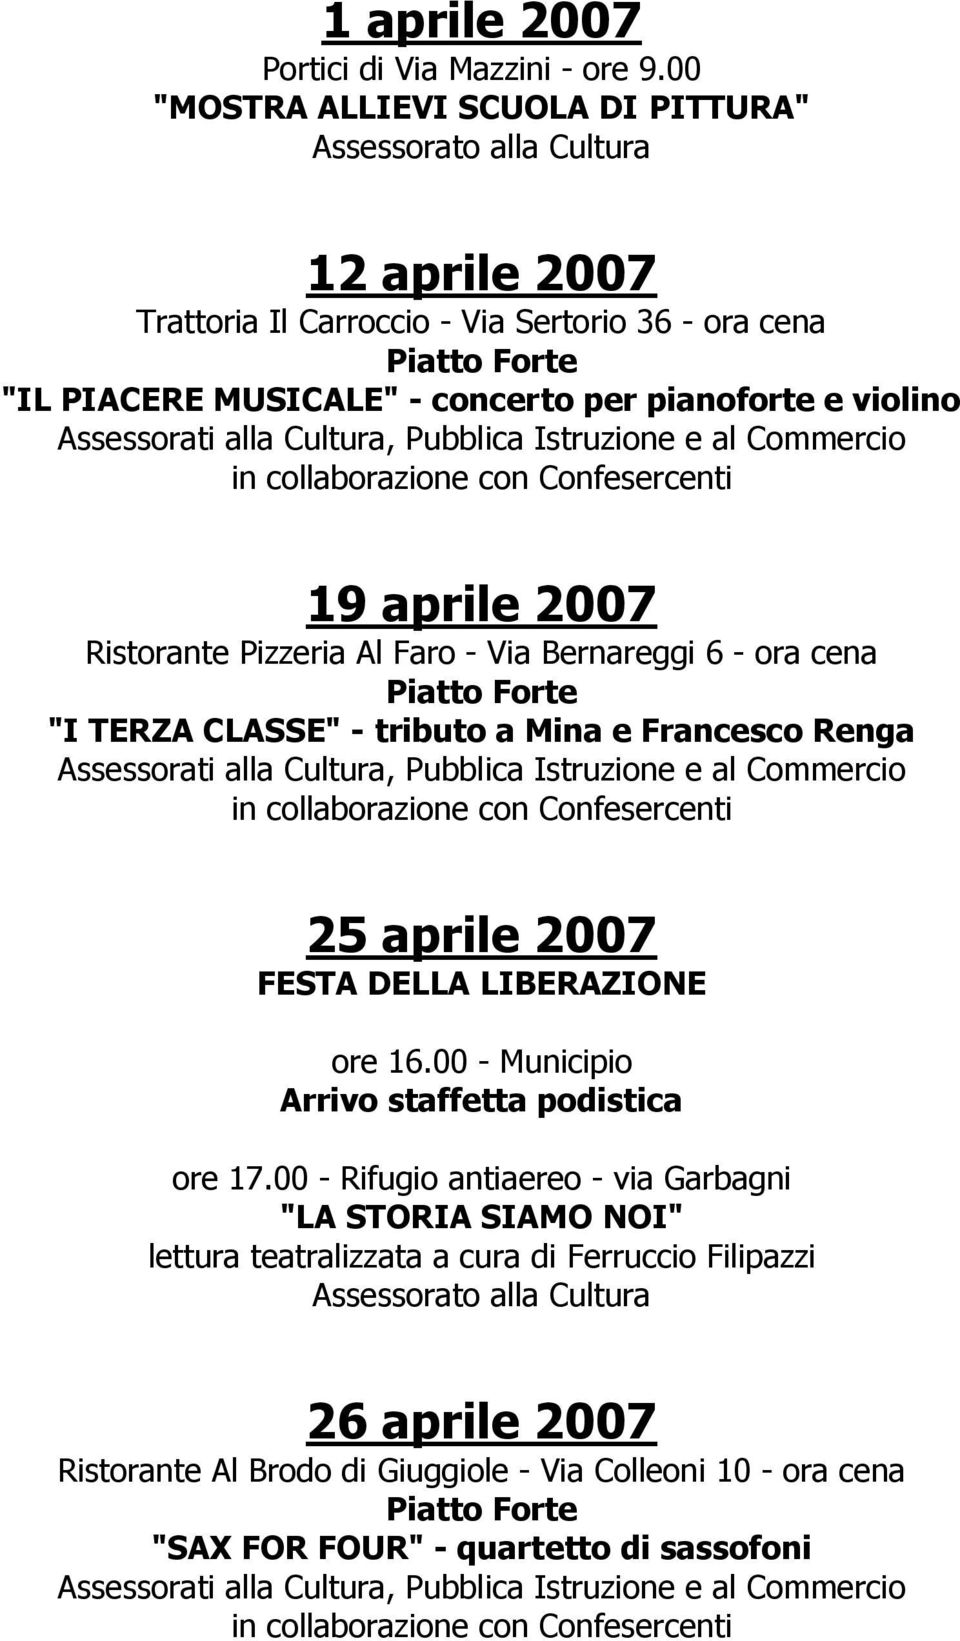 19 aprile 2007 Ristorante Pizzeria Al Faro - Via Bernareggi 6 - ora cena "I TERZA CLASSE" - tributo a Mina e Francesco Renga 25 aprile 2007 FESTA DELLA LIBERAZIONE